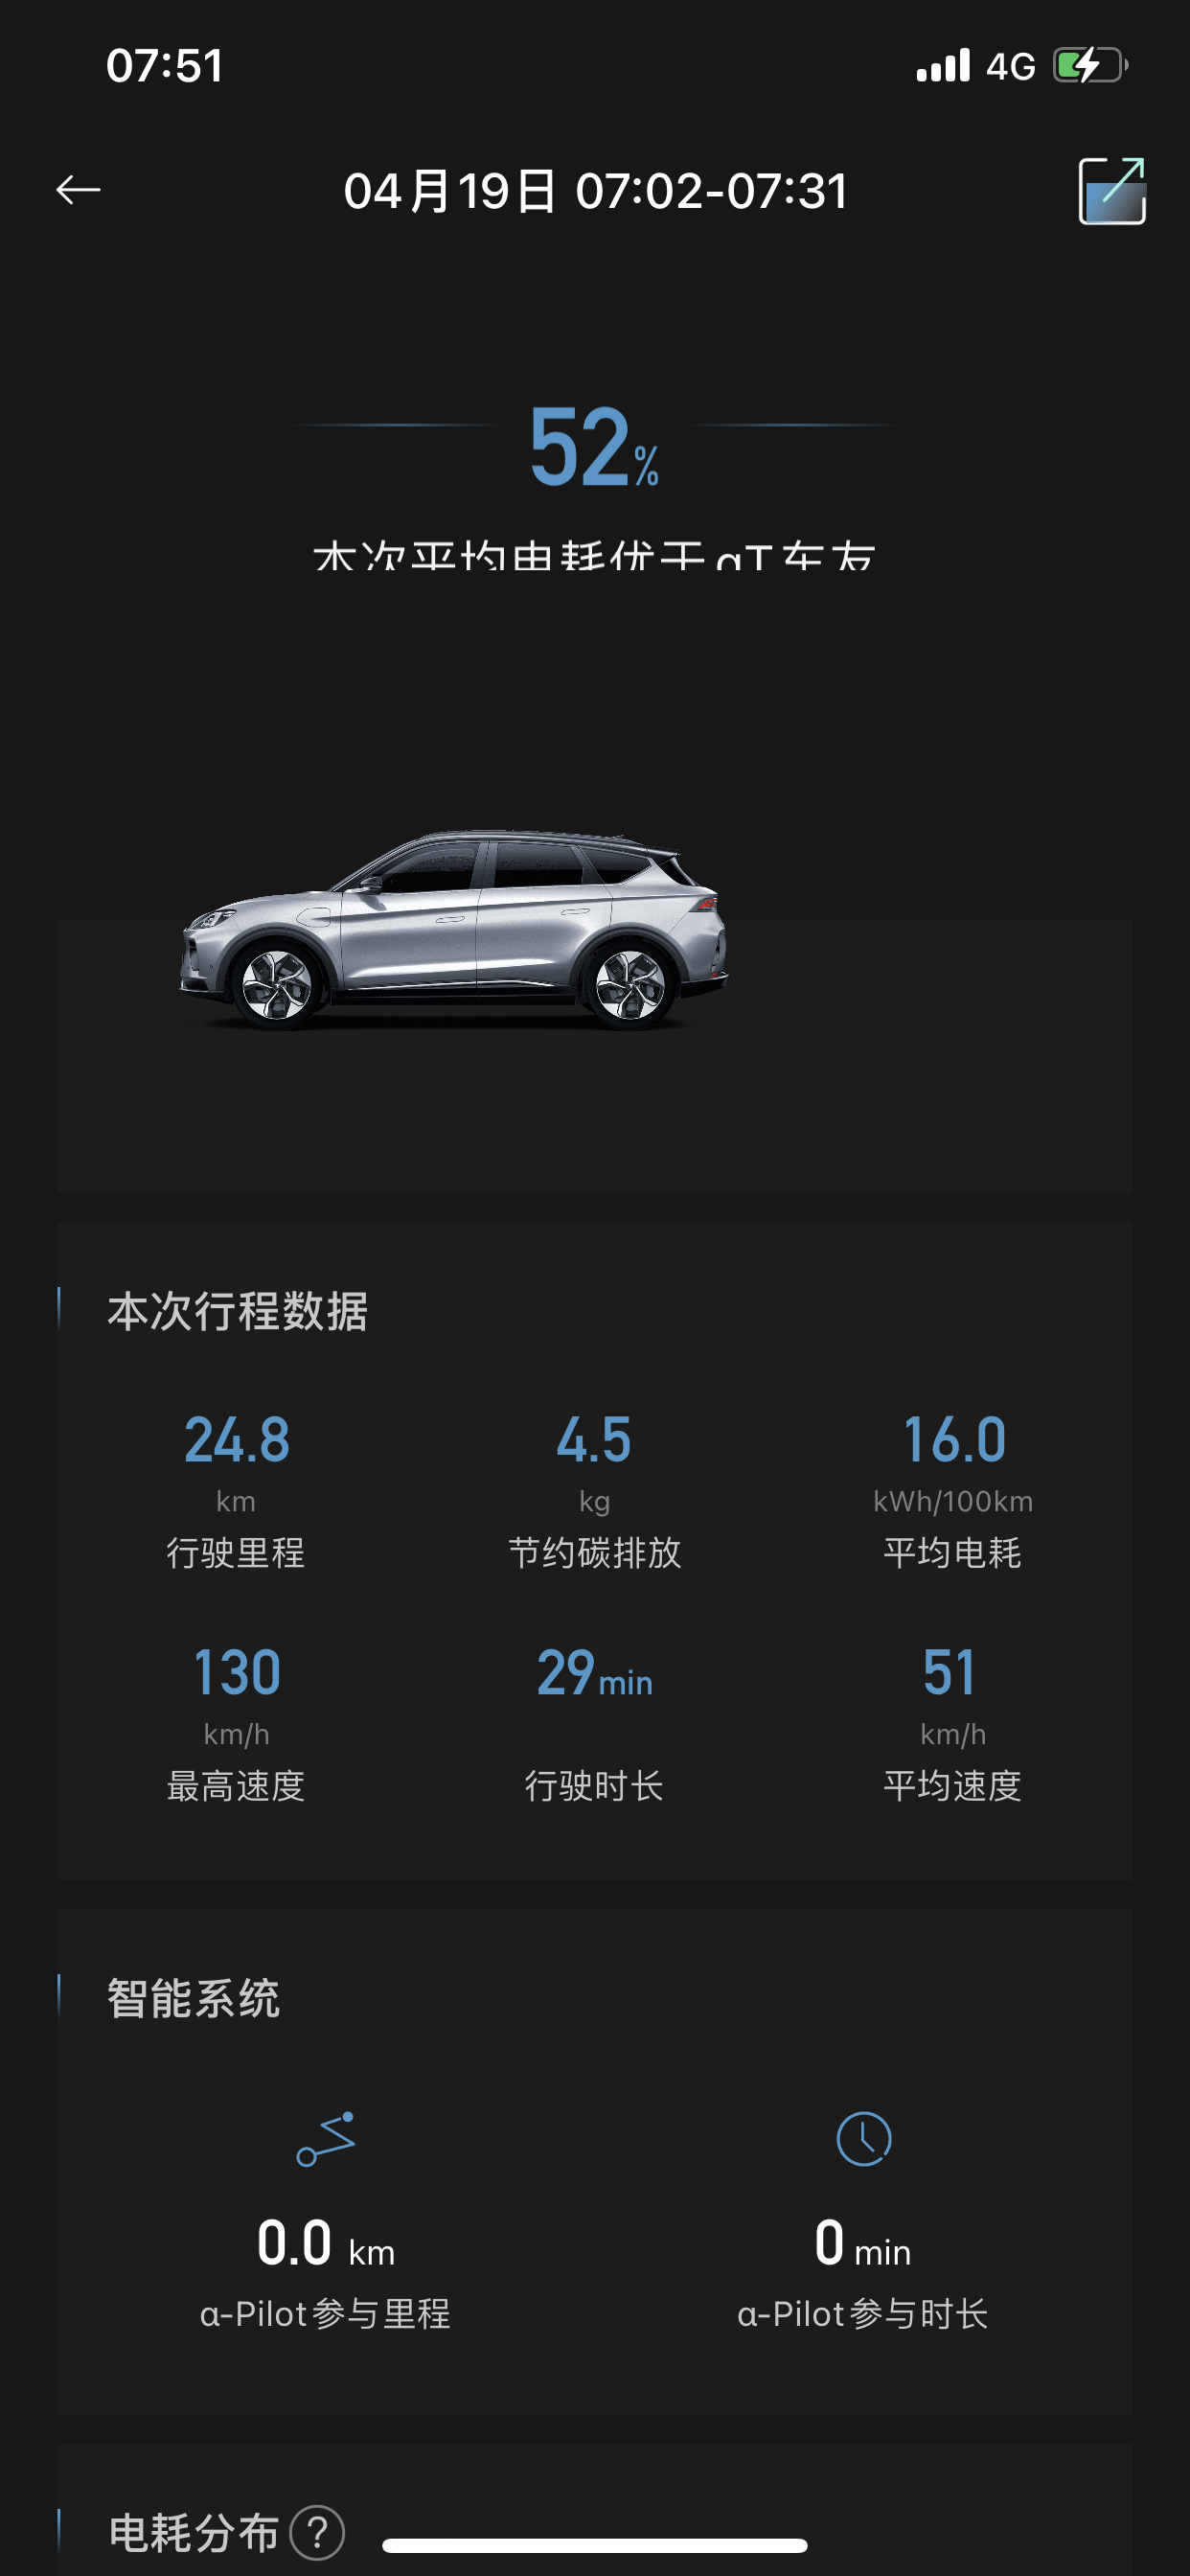 -城市：北京
﹣温度：4度到-7度
﹣车型型号：极狐阿尔法T 653s+
﹣能耗表现：15-18kWh
﹣其他备注：市区代步，时速60左右，动能回收最大
